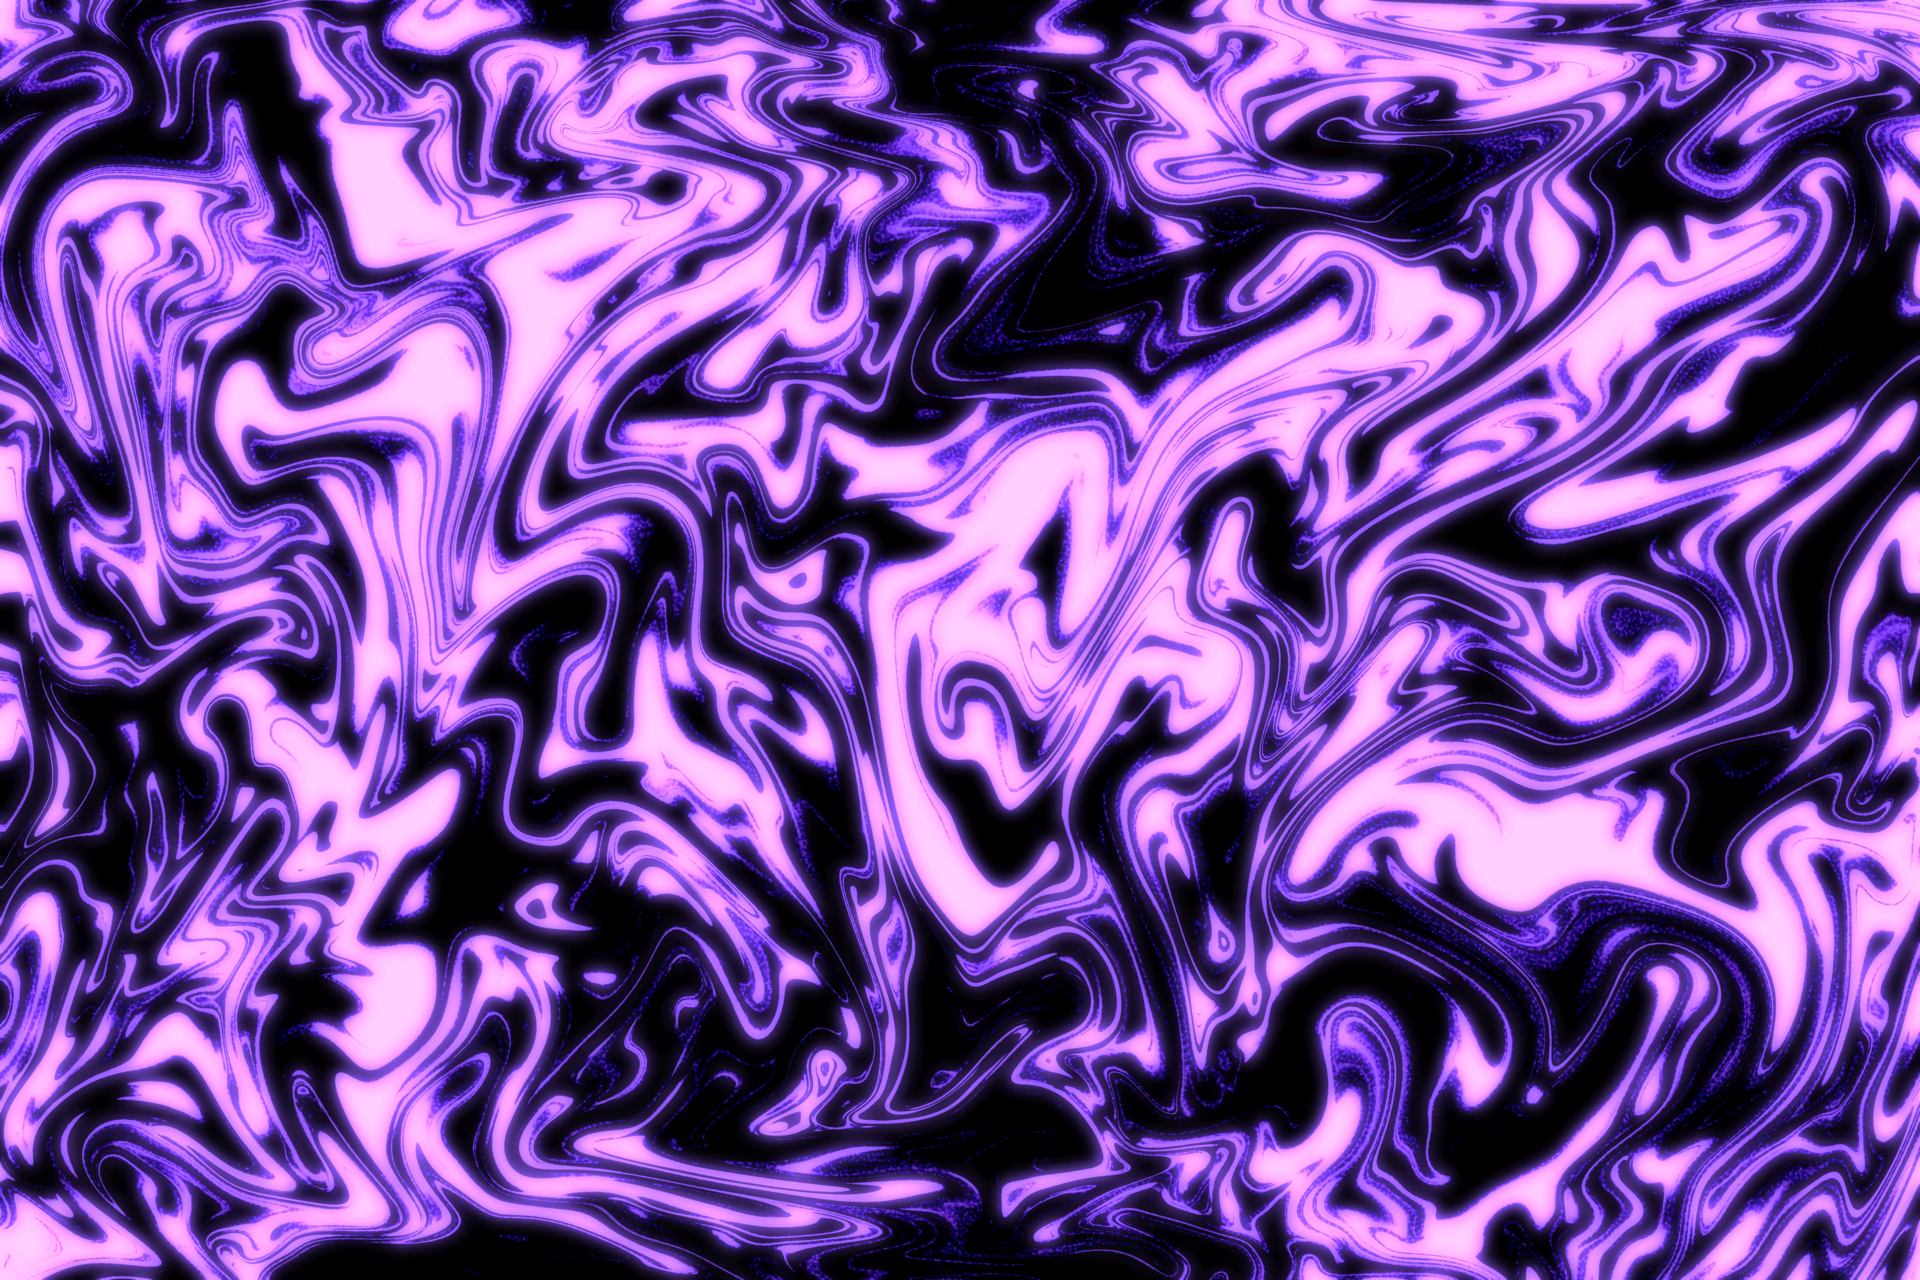 Noise_Purple_Fluid_2, width 1920, jpg